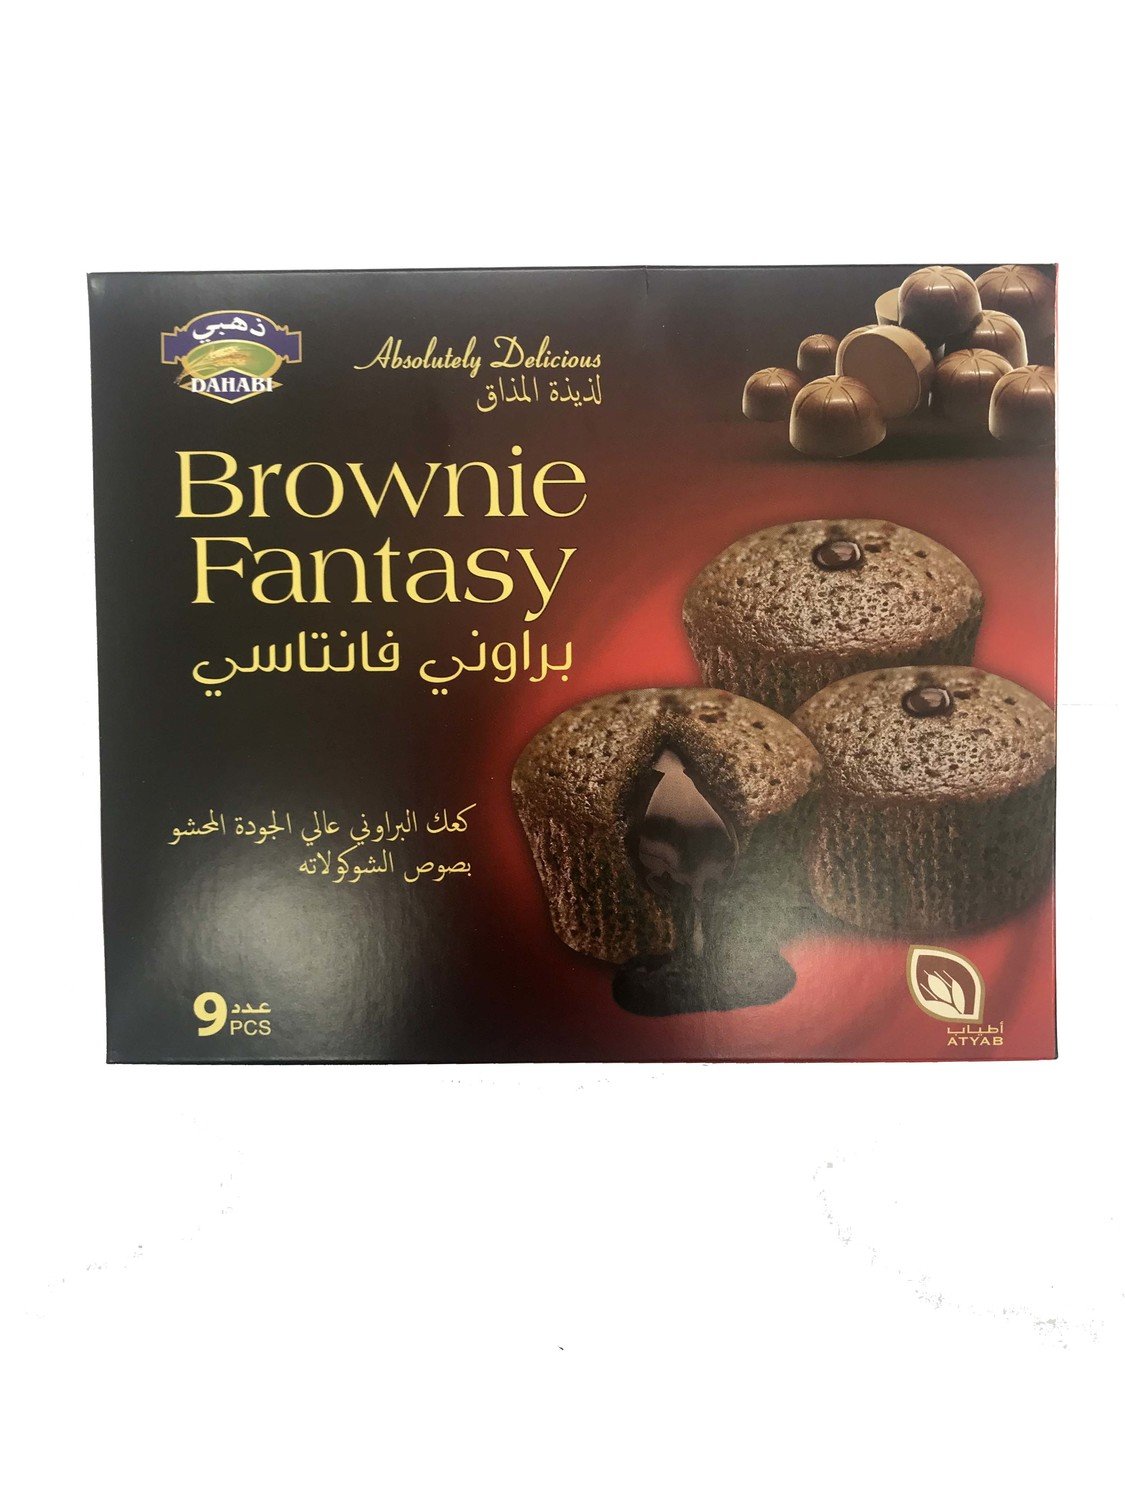 Dahabi Brownie Fantasy 9pc 100g